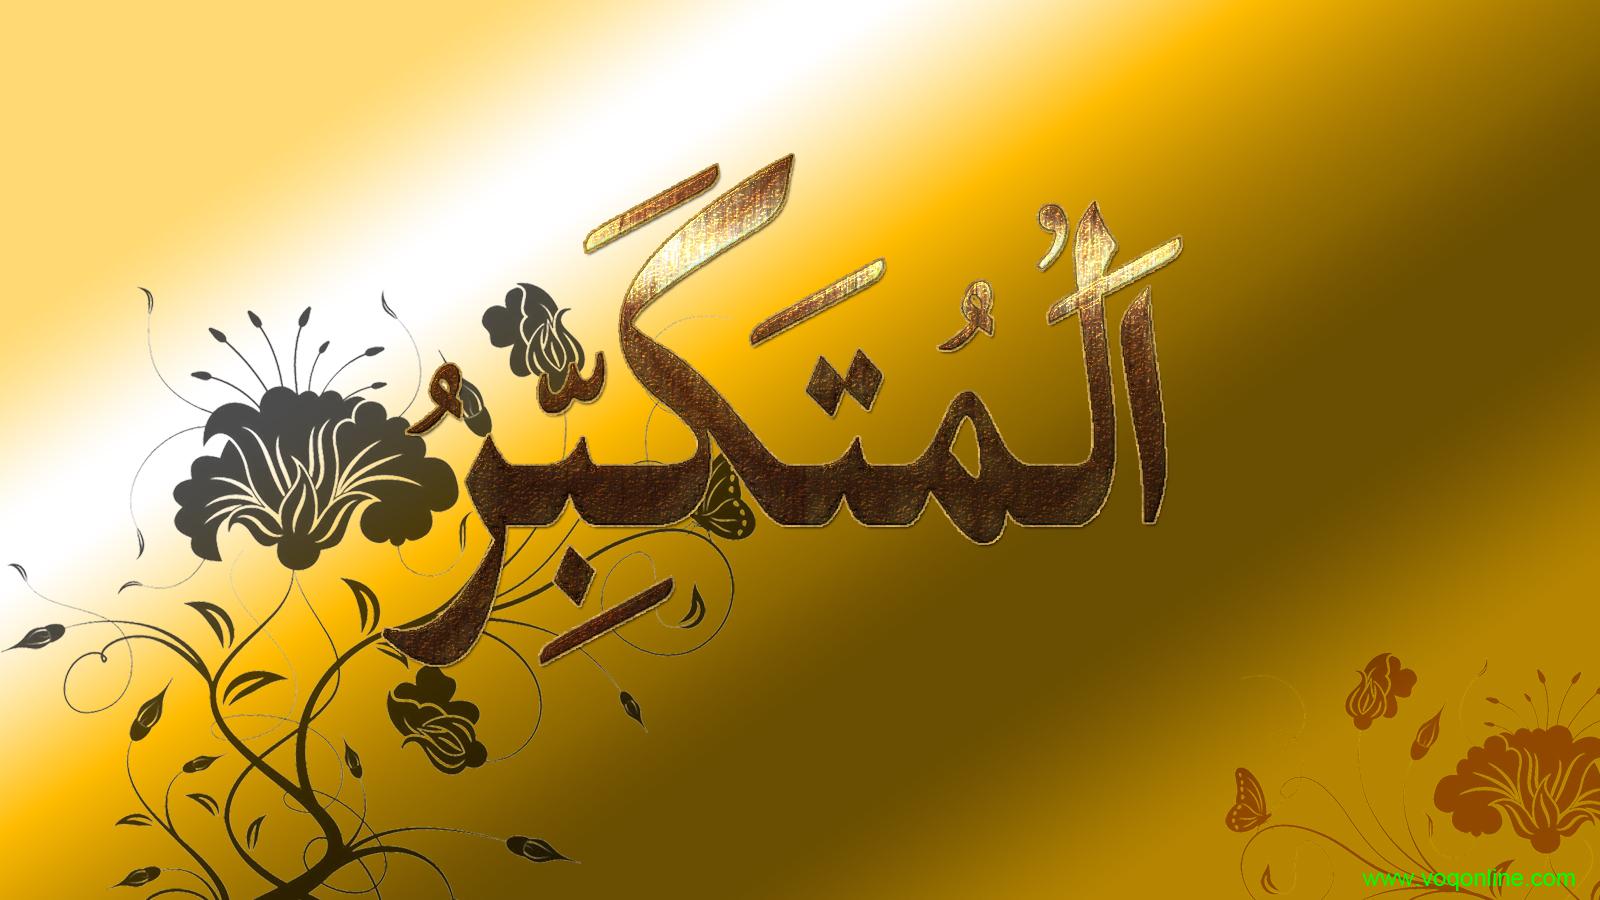 Beautiful Allah Name Hd Wallpaper Images Free Download - 1600x900 Wallpaper  